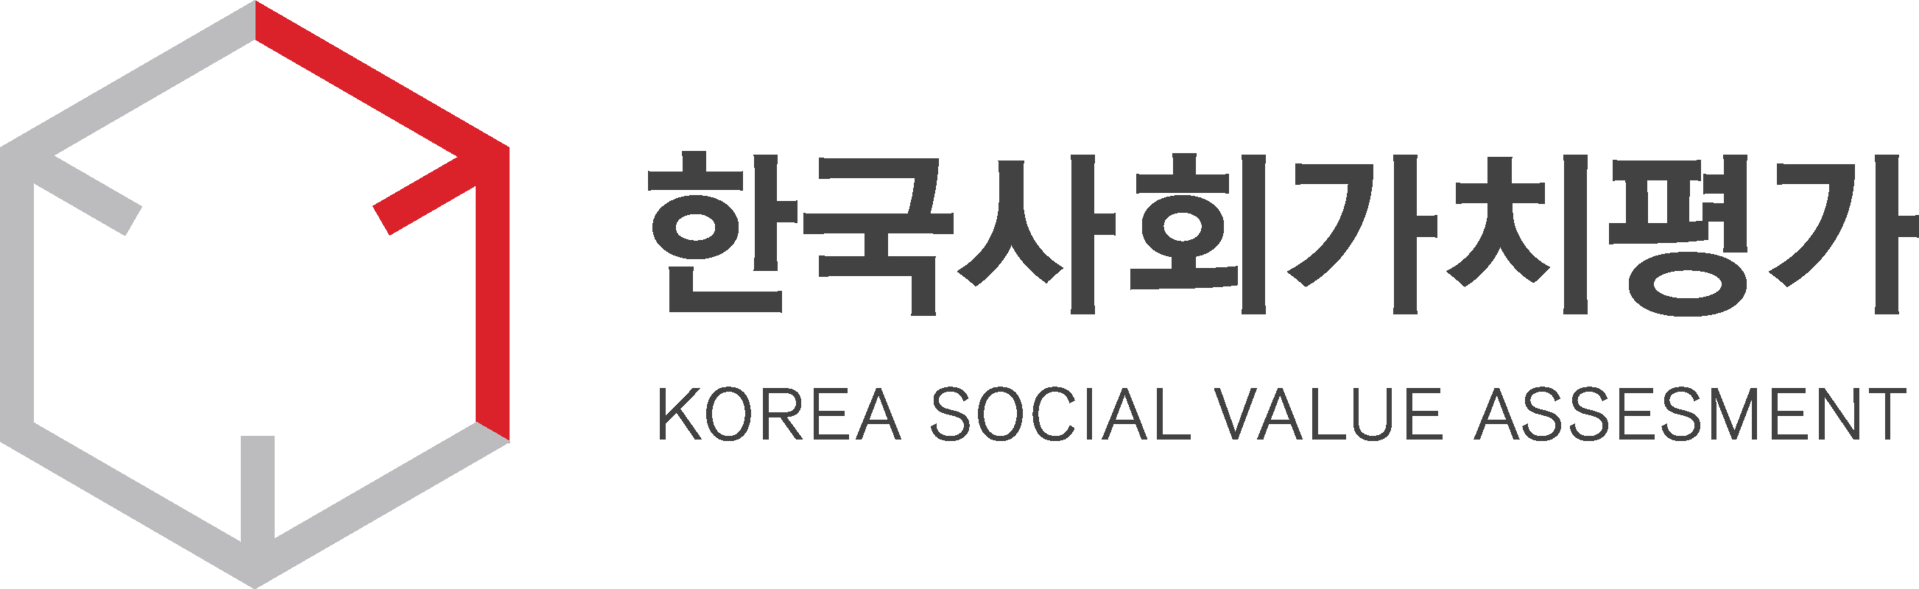 한국사회가치평가